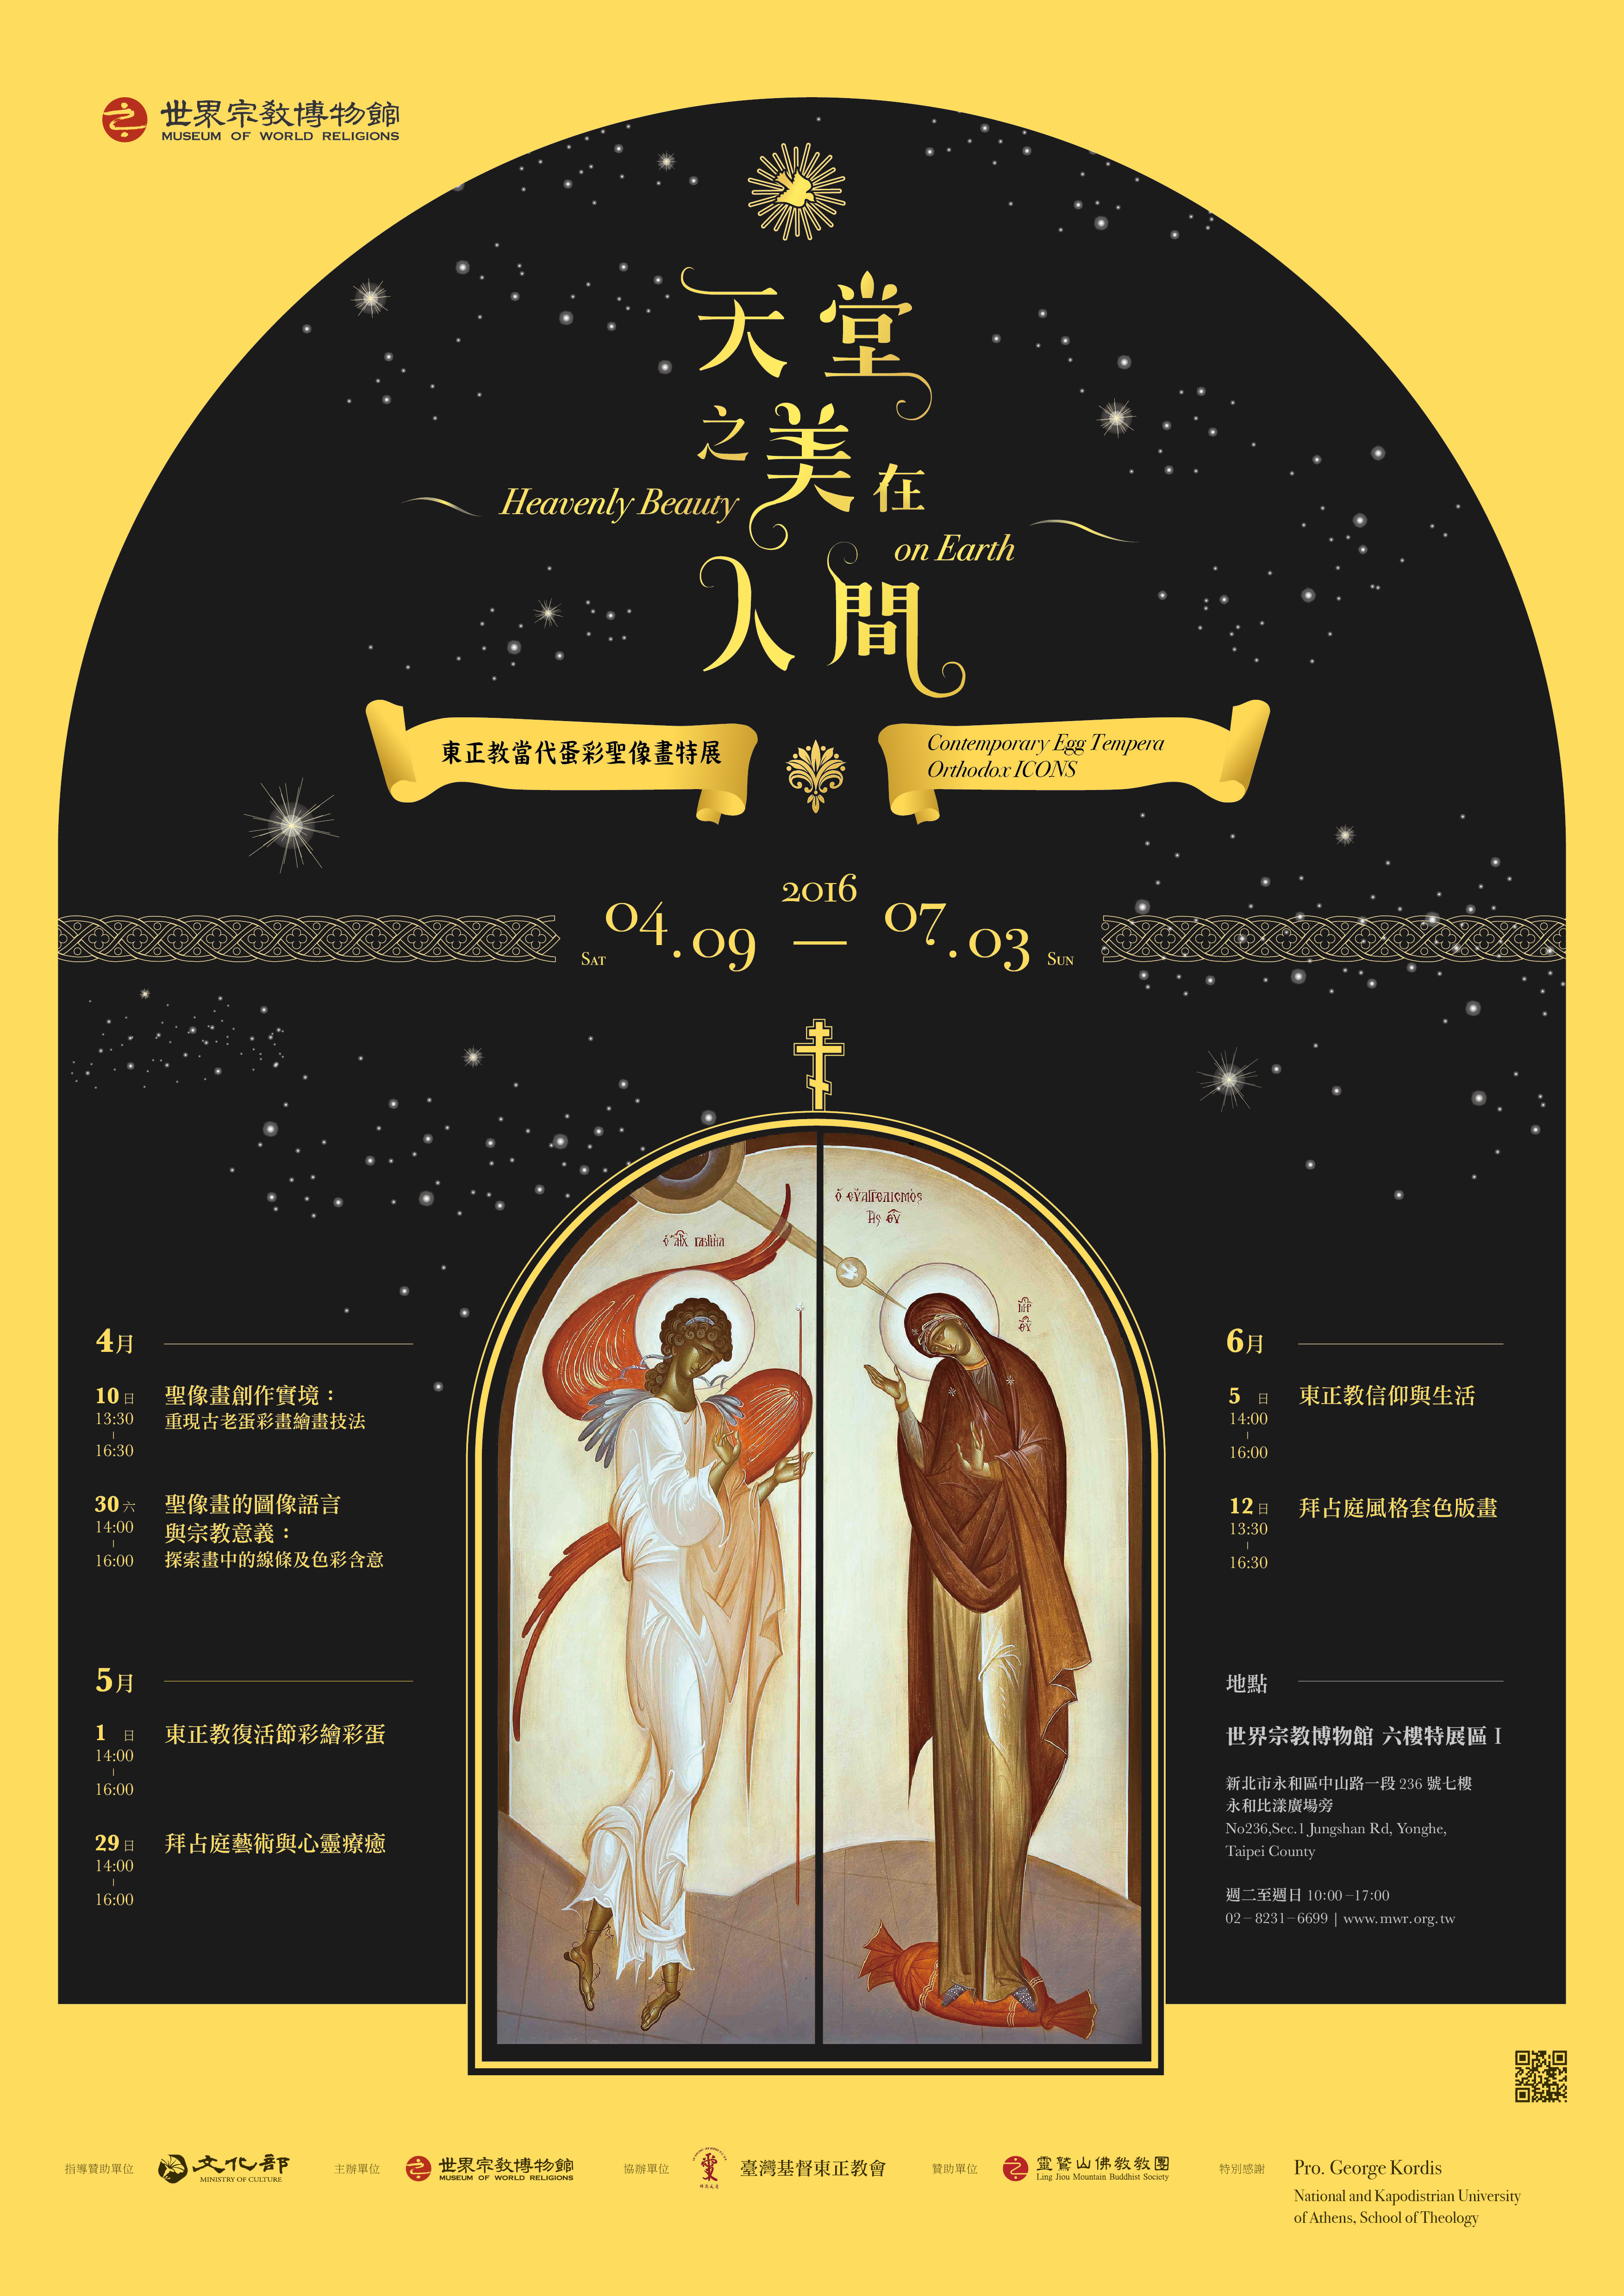 東正教聖像畫展 海報(含活動資訊)